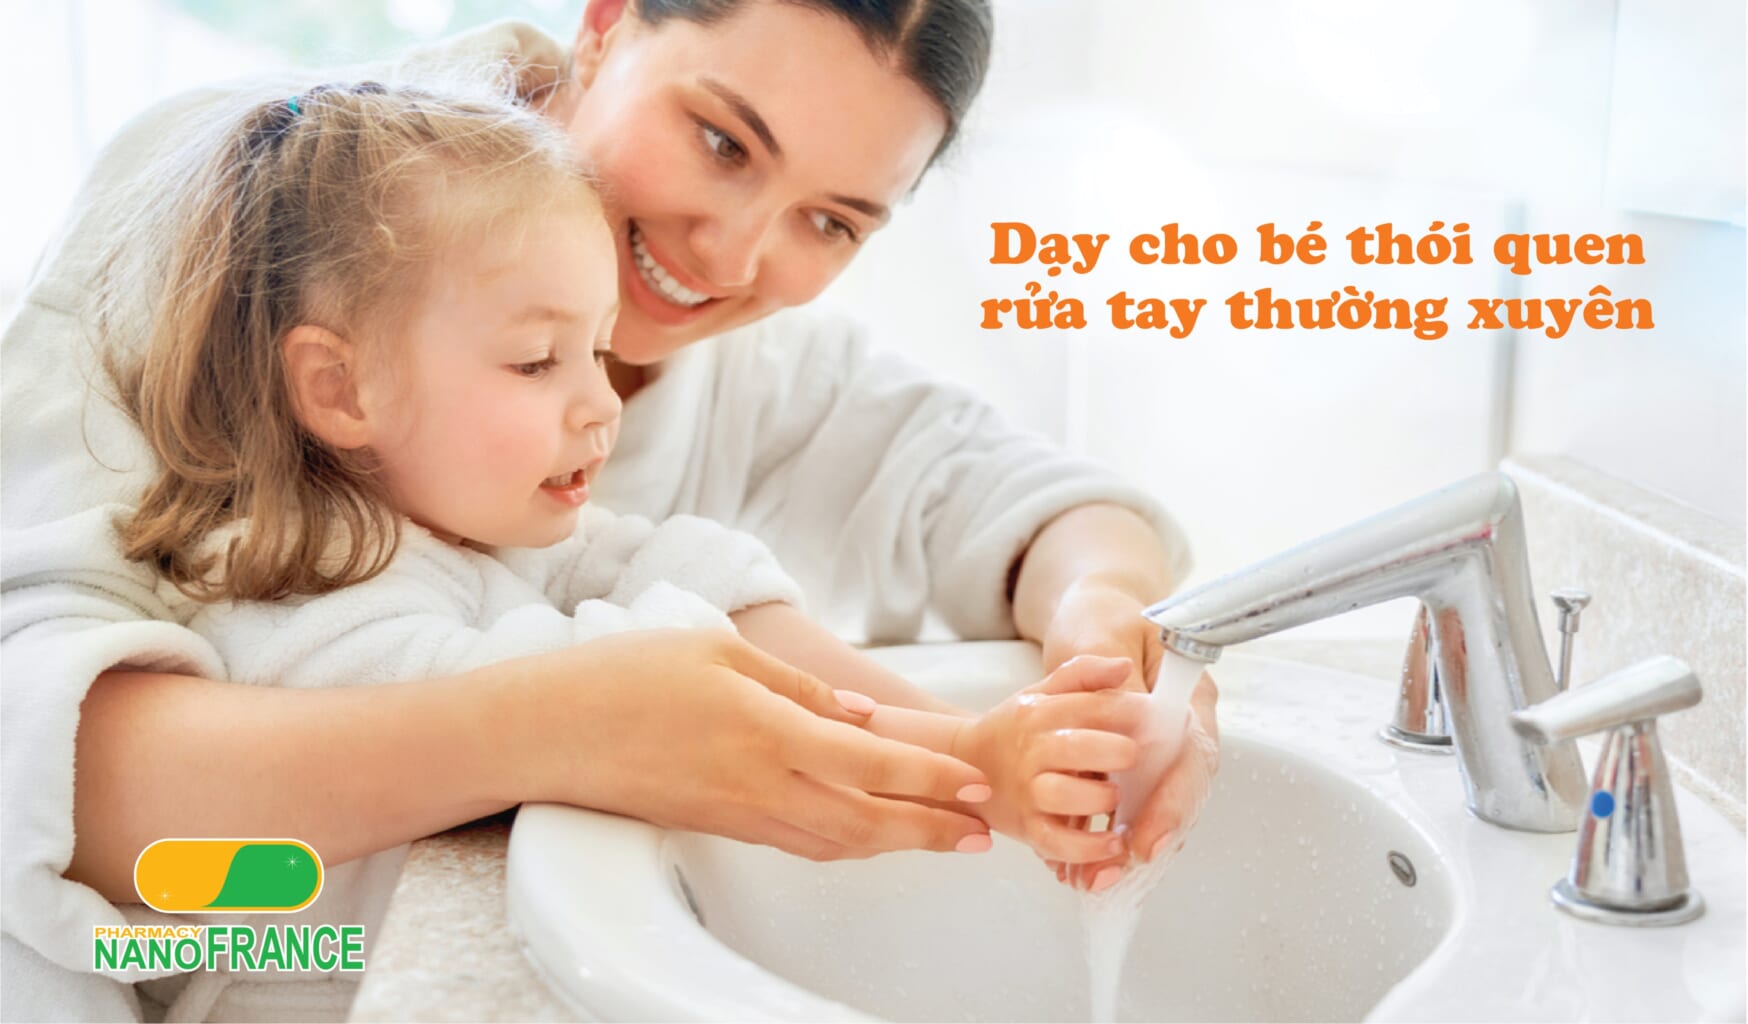 Dạy cho bé thói quen rửa tay thường xuyên